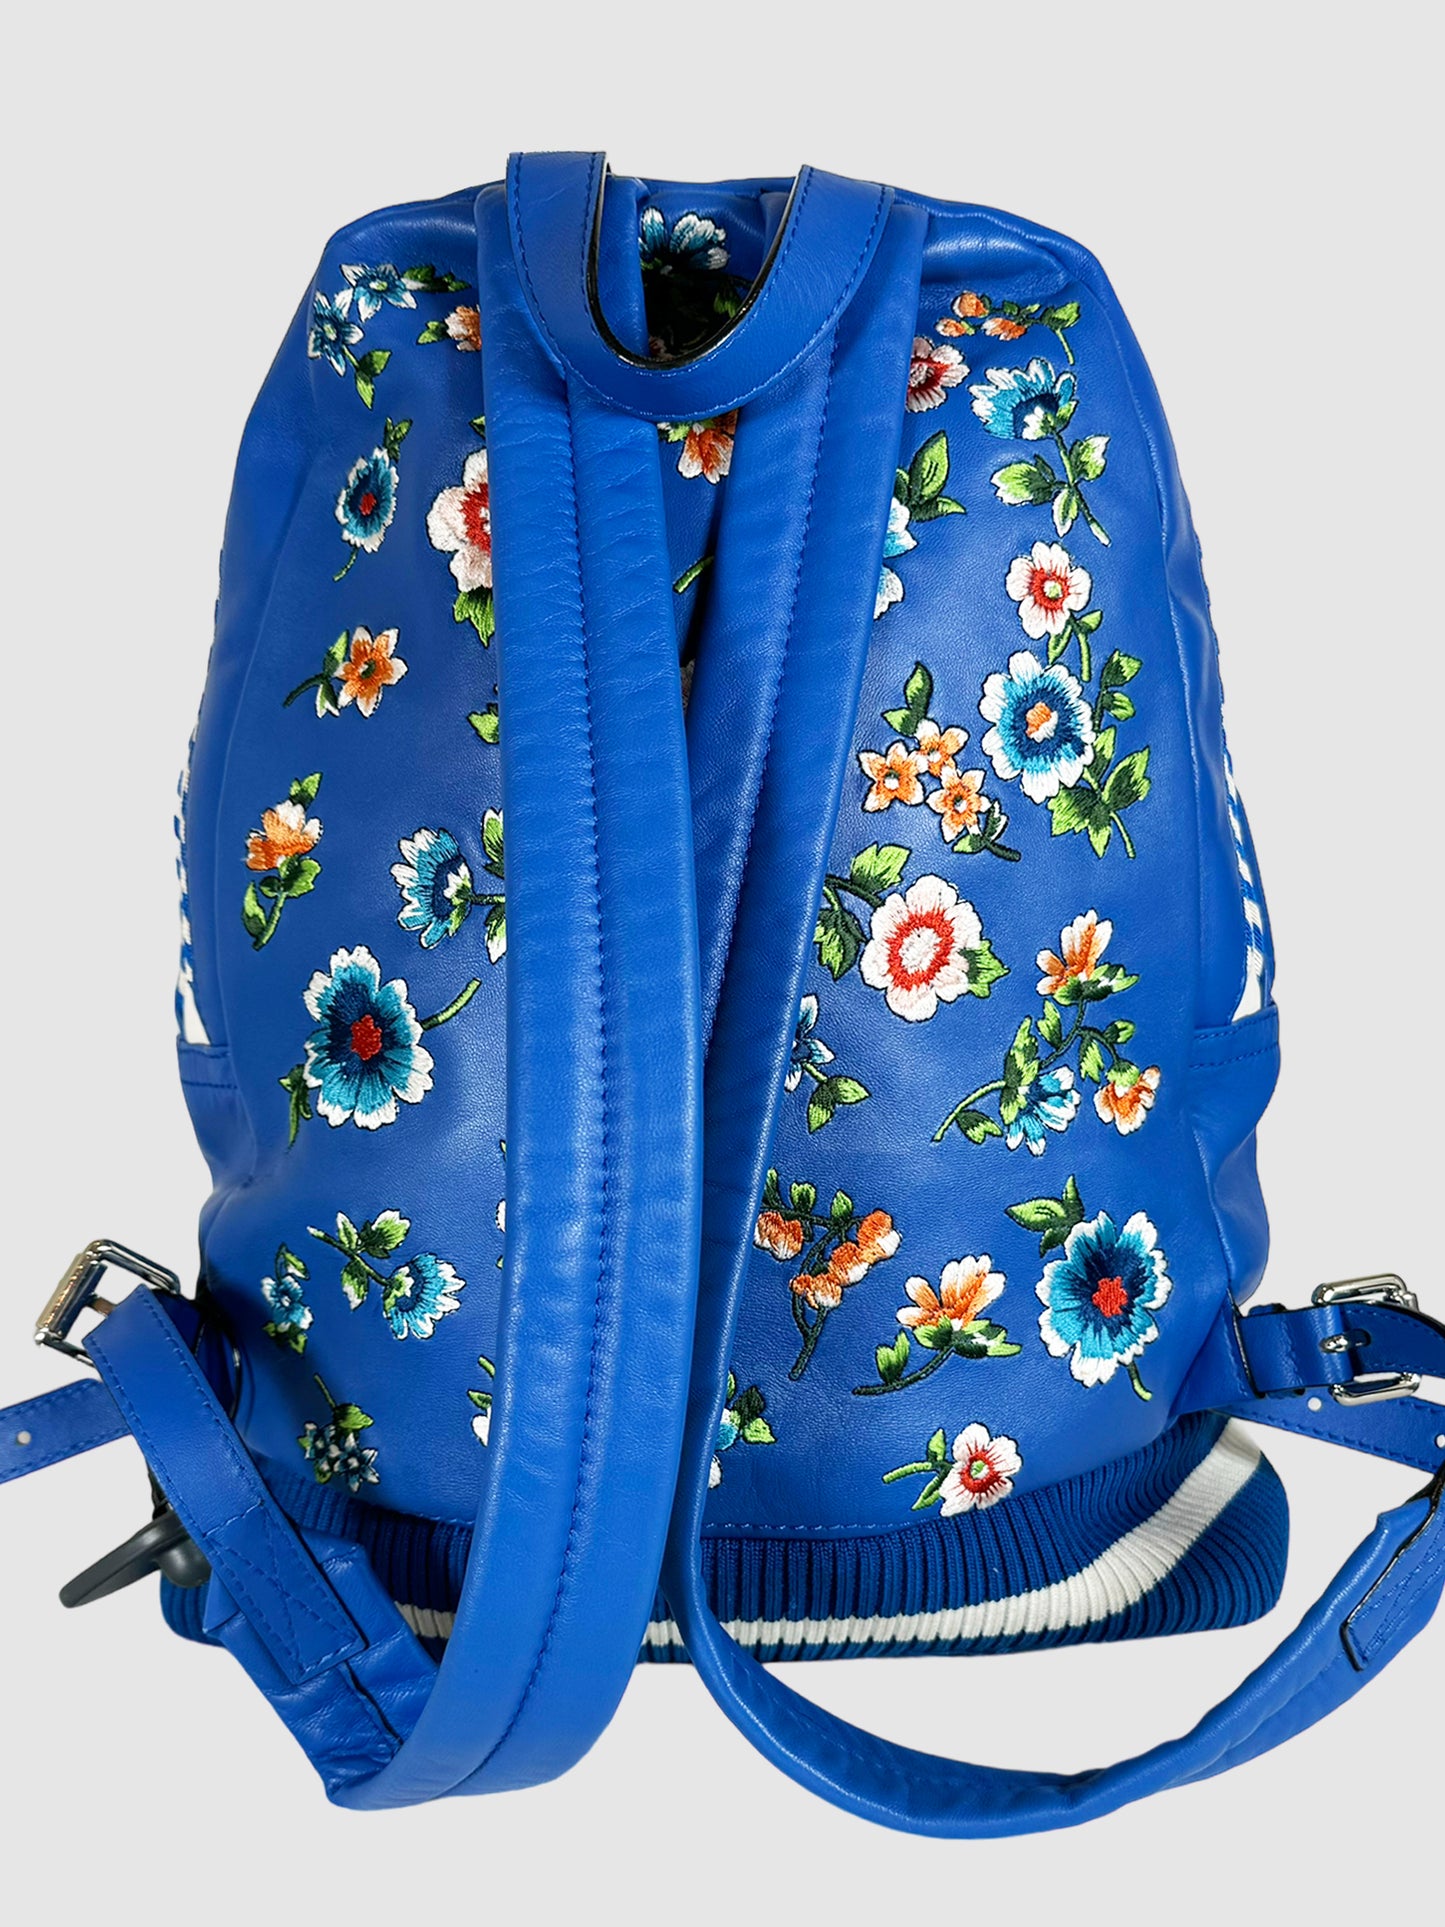 Embroidered Bomber Jacket Backpack